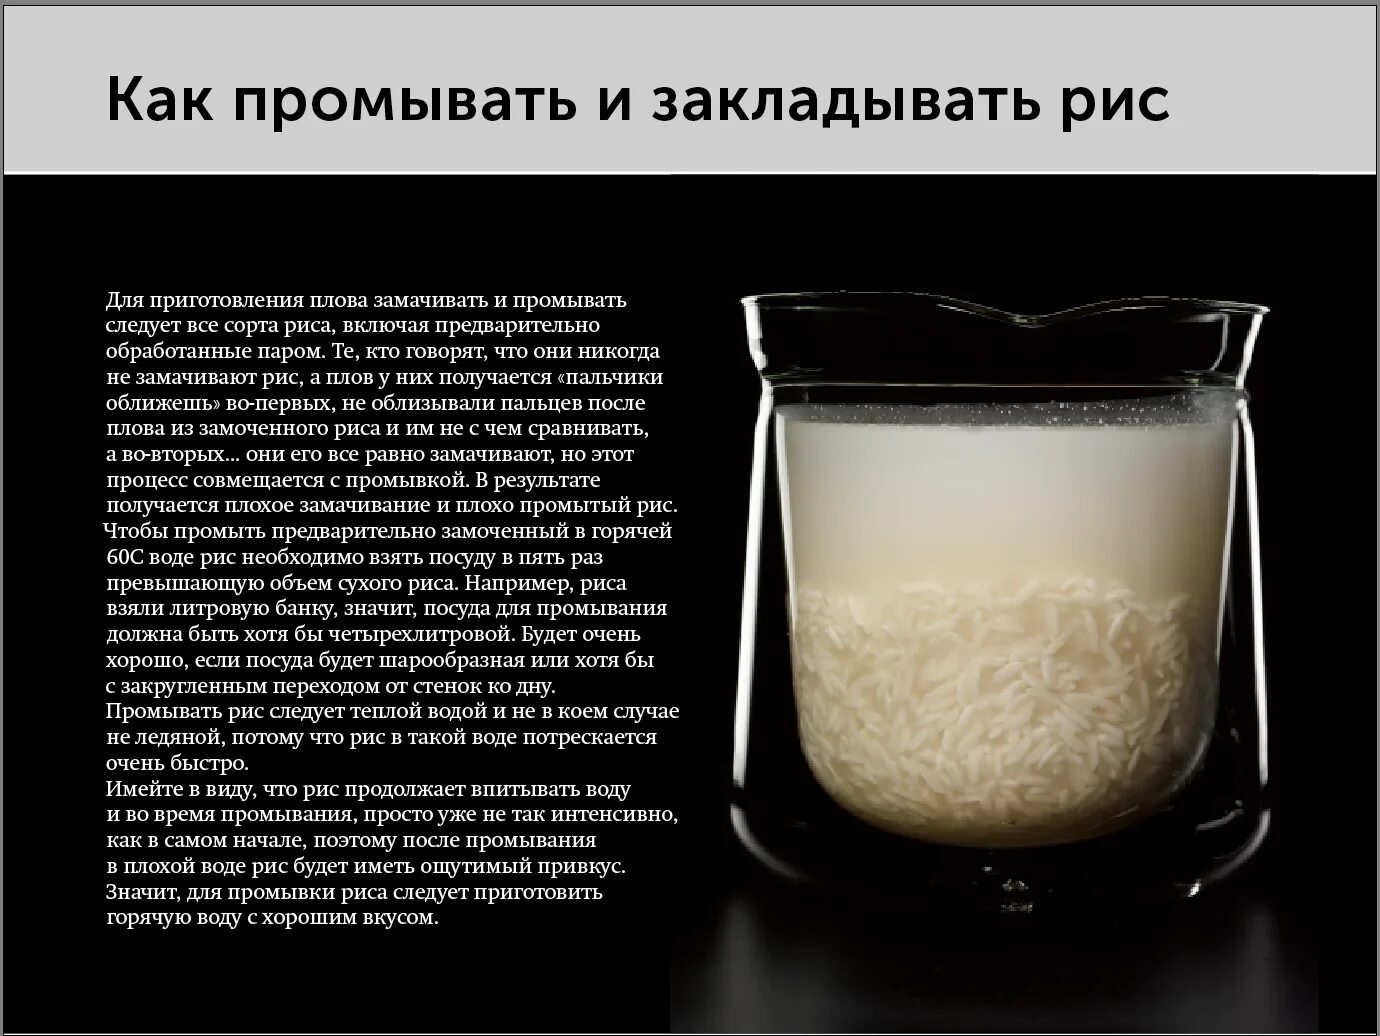 Сколько воды на стакан риса. Сколько соотношение риса и воды. Пропорции риса и воды для плова. Соотношение жидкости и риса в плове. Соотношение воды и риса в плове в стаканах.